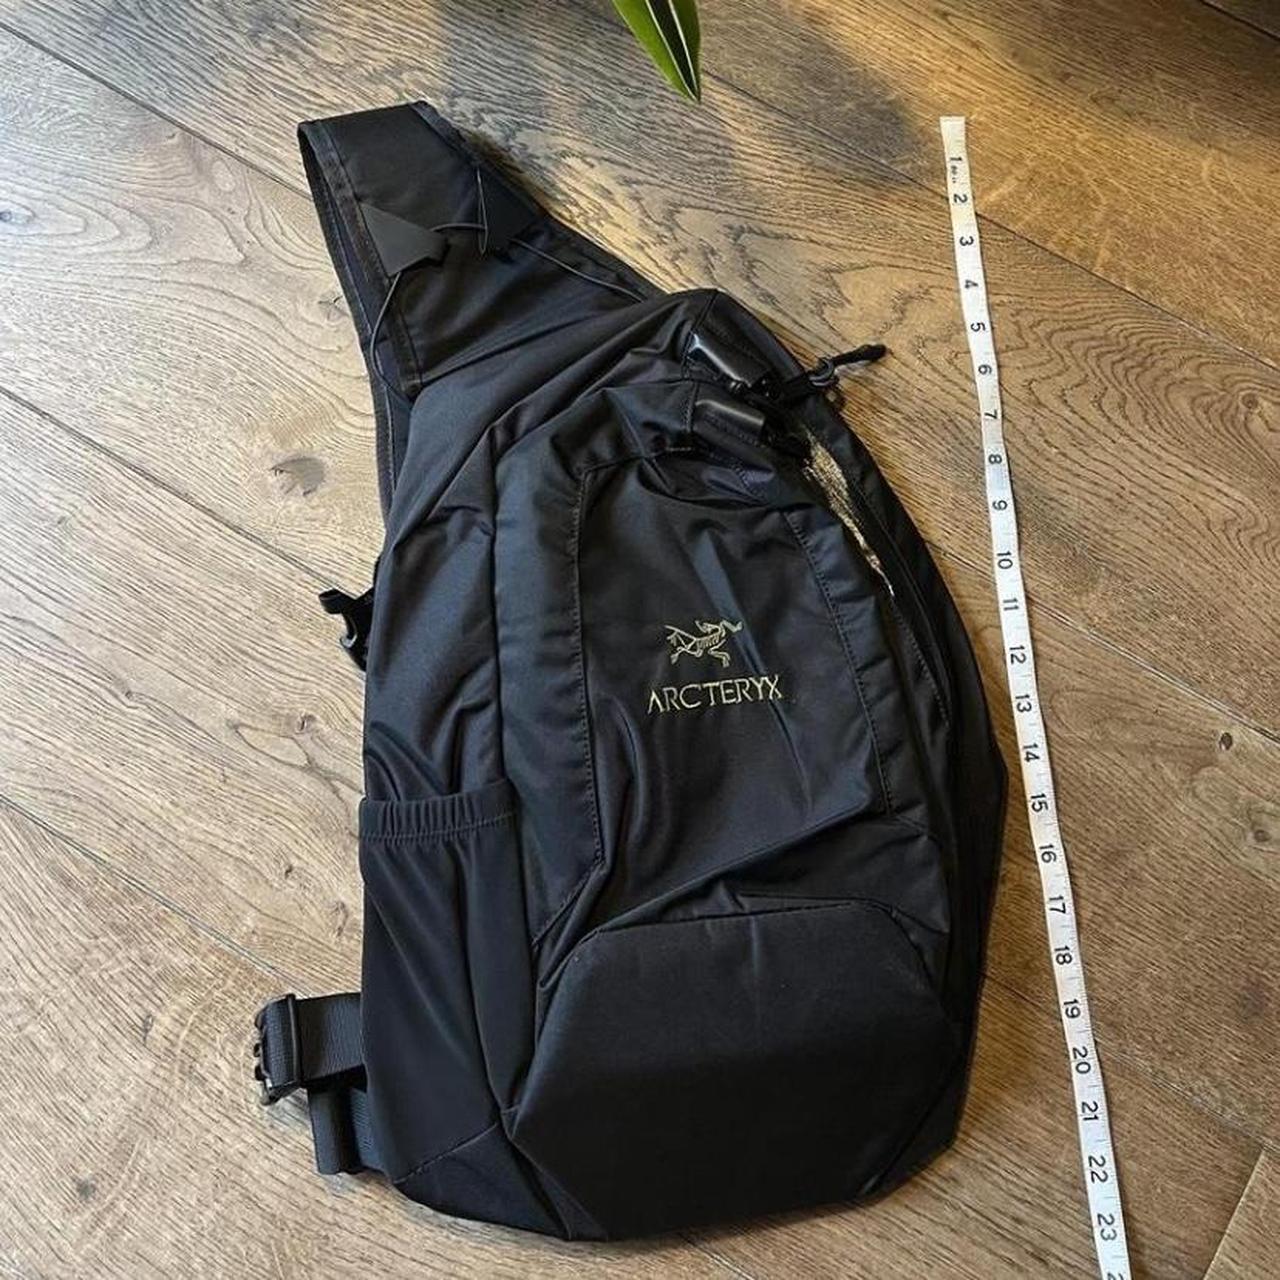 Arcteryx System A Quiver Bag Tri-Sling backpack in... - Depop